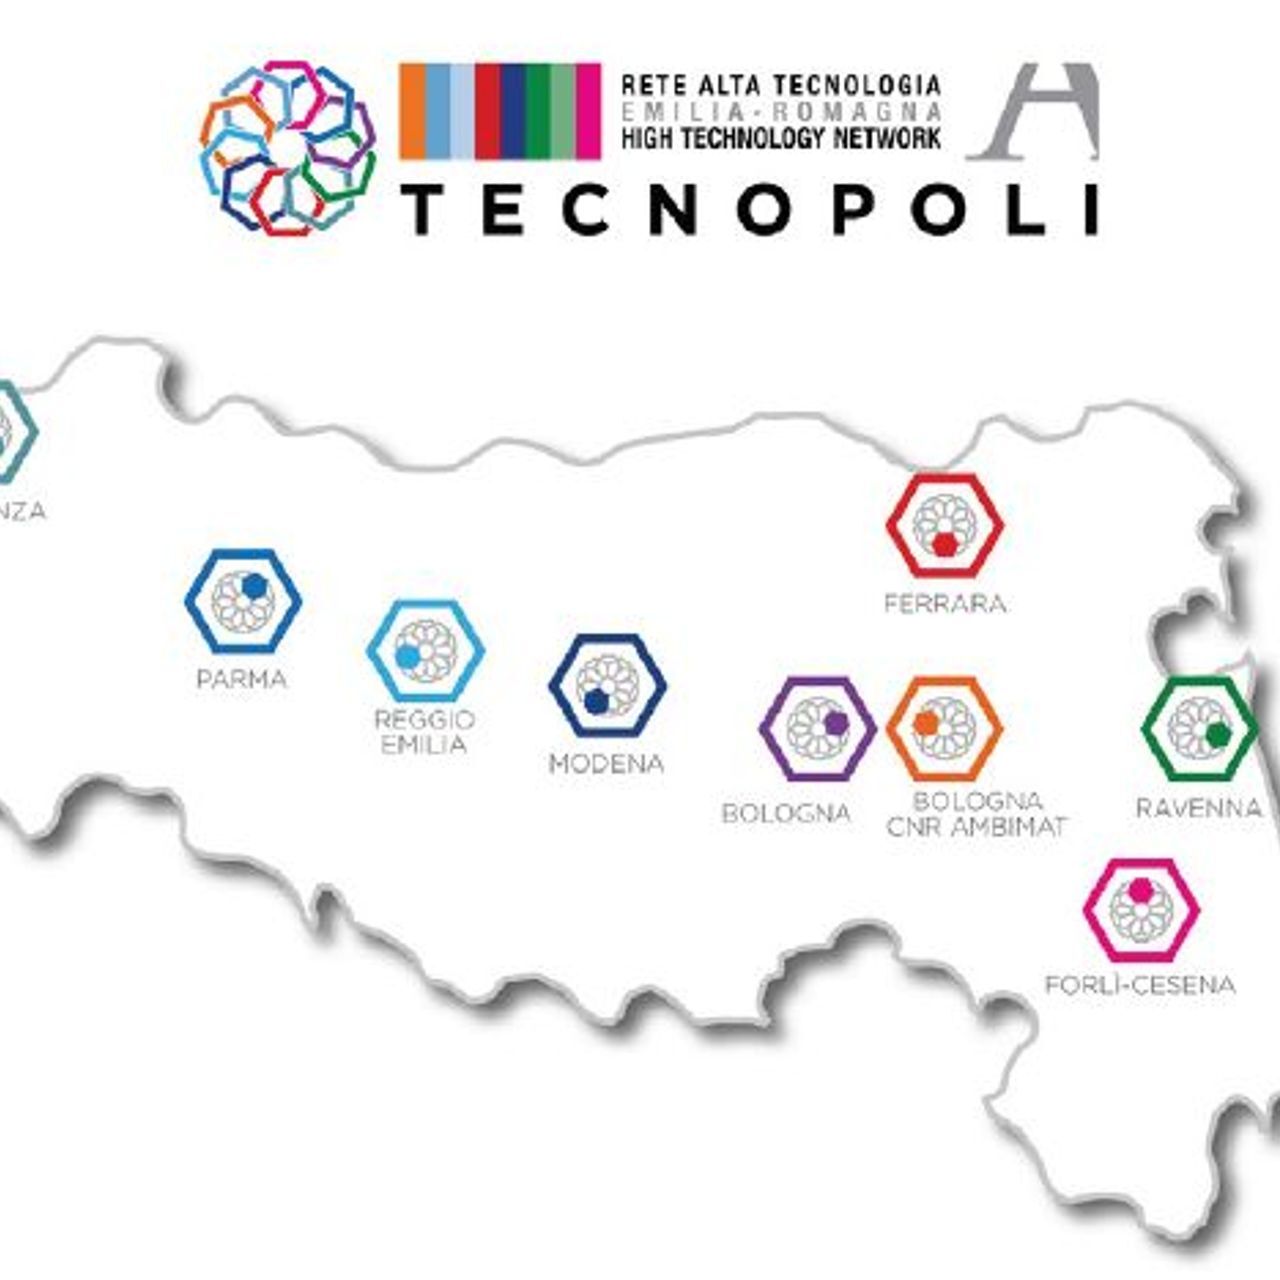 Сеть высоких технологий региона Эмилия-Романья